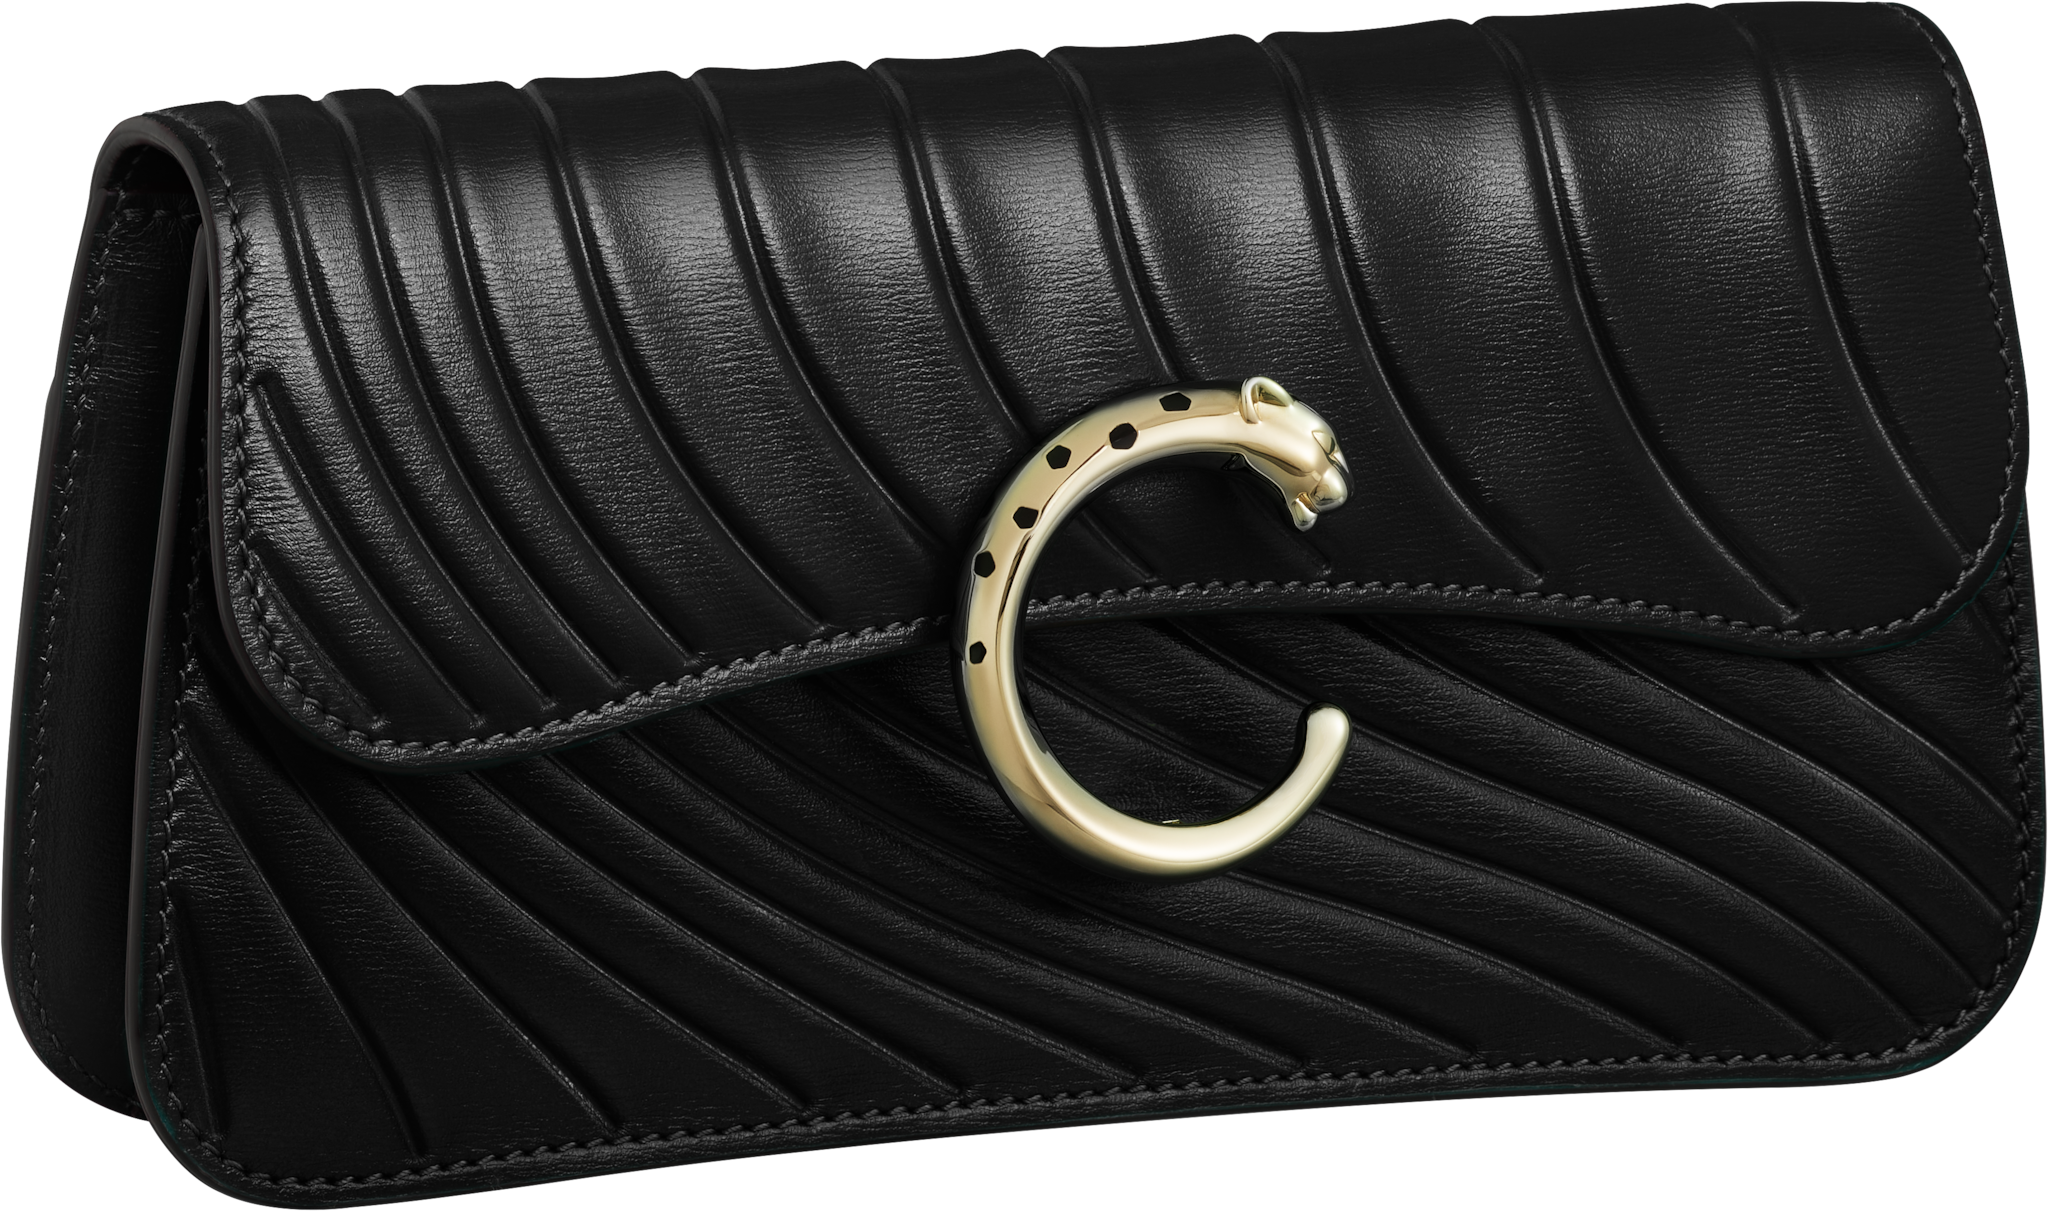 Bolso de cadena tamaño mini, Panthère de CartierPiel de becerro negra, grabado con el motivo distintivo de Cartier, acabado dorado